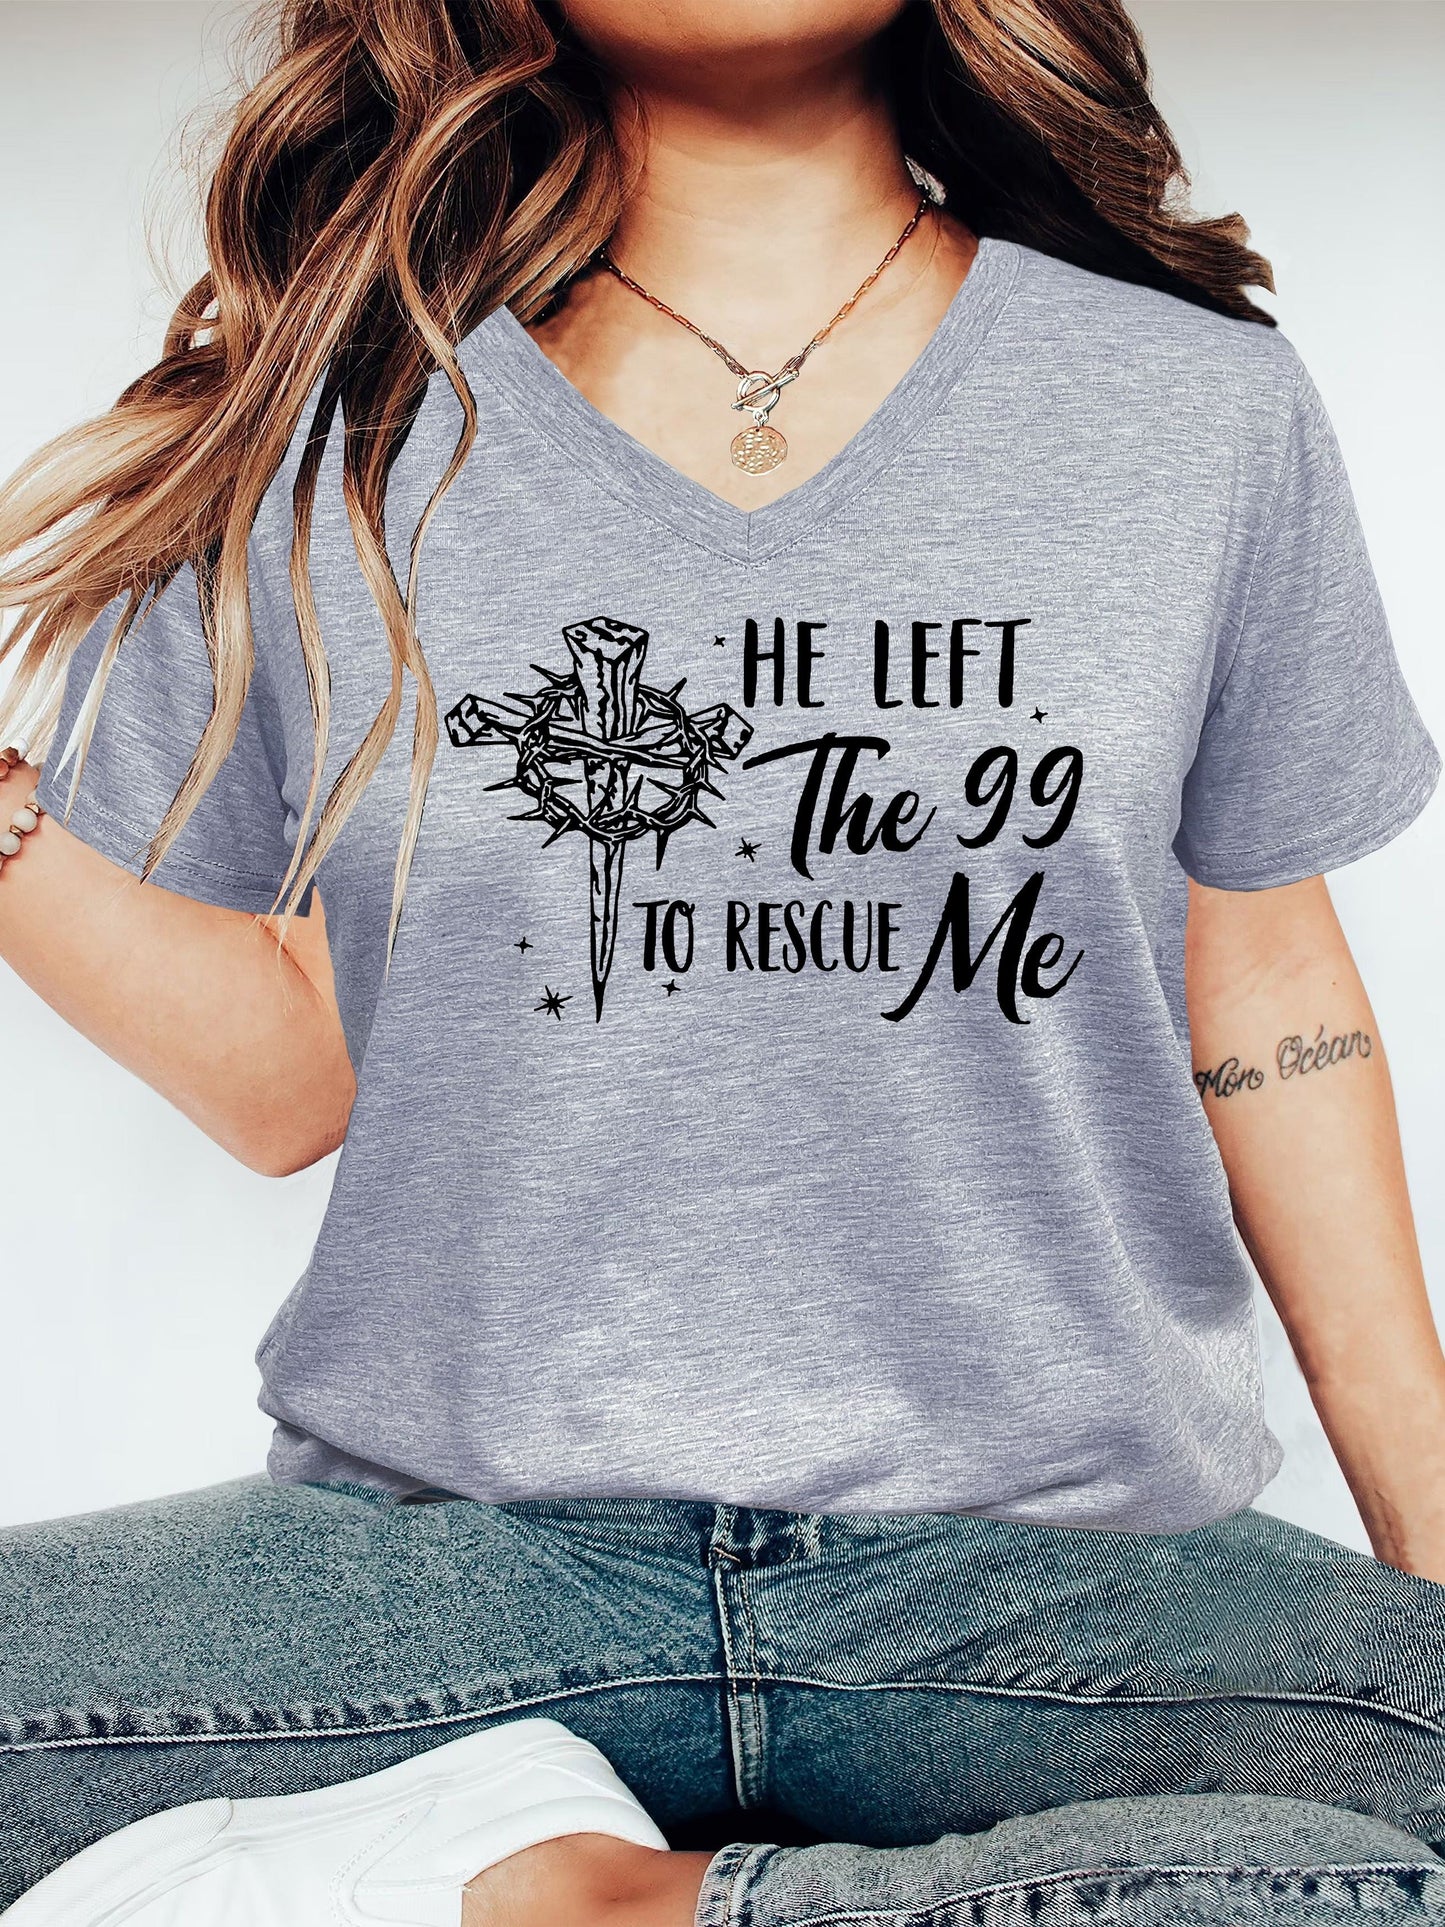 He Left The 99 To Rescue Me Women's Christian V Neck T-Shirt claimedbygoddesigns